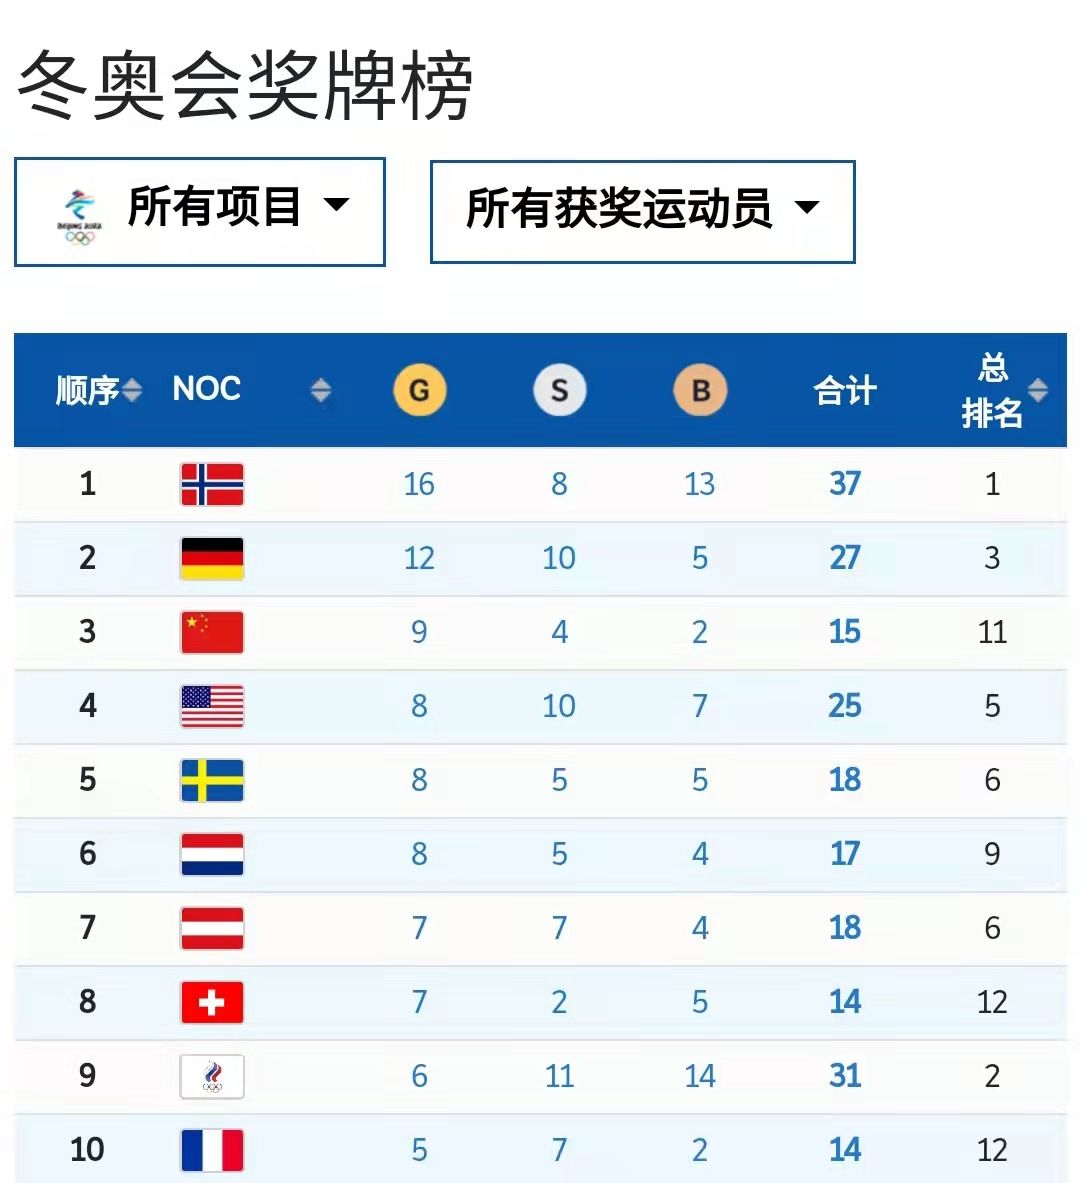 中国代表团锁定北京冬奥会金牌榜第三名